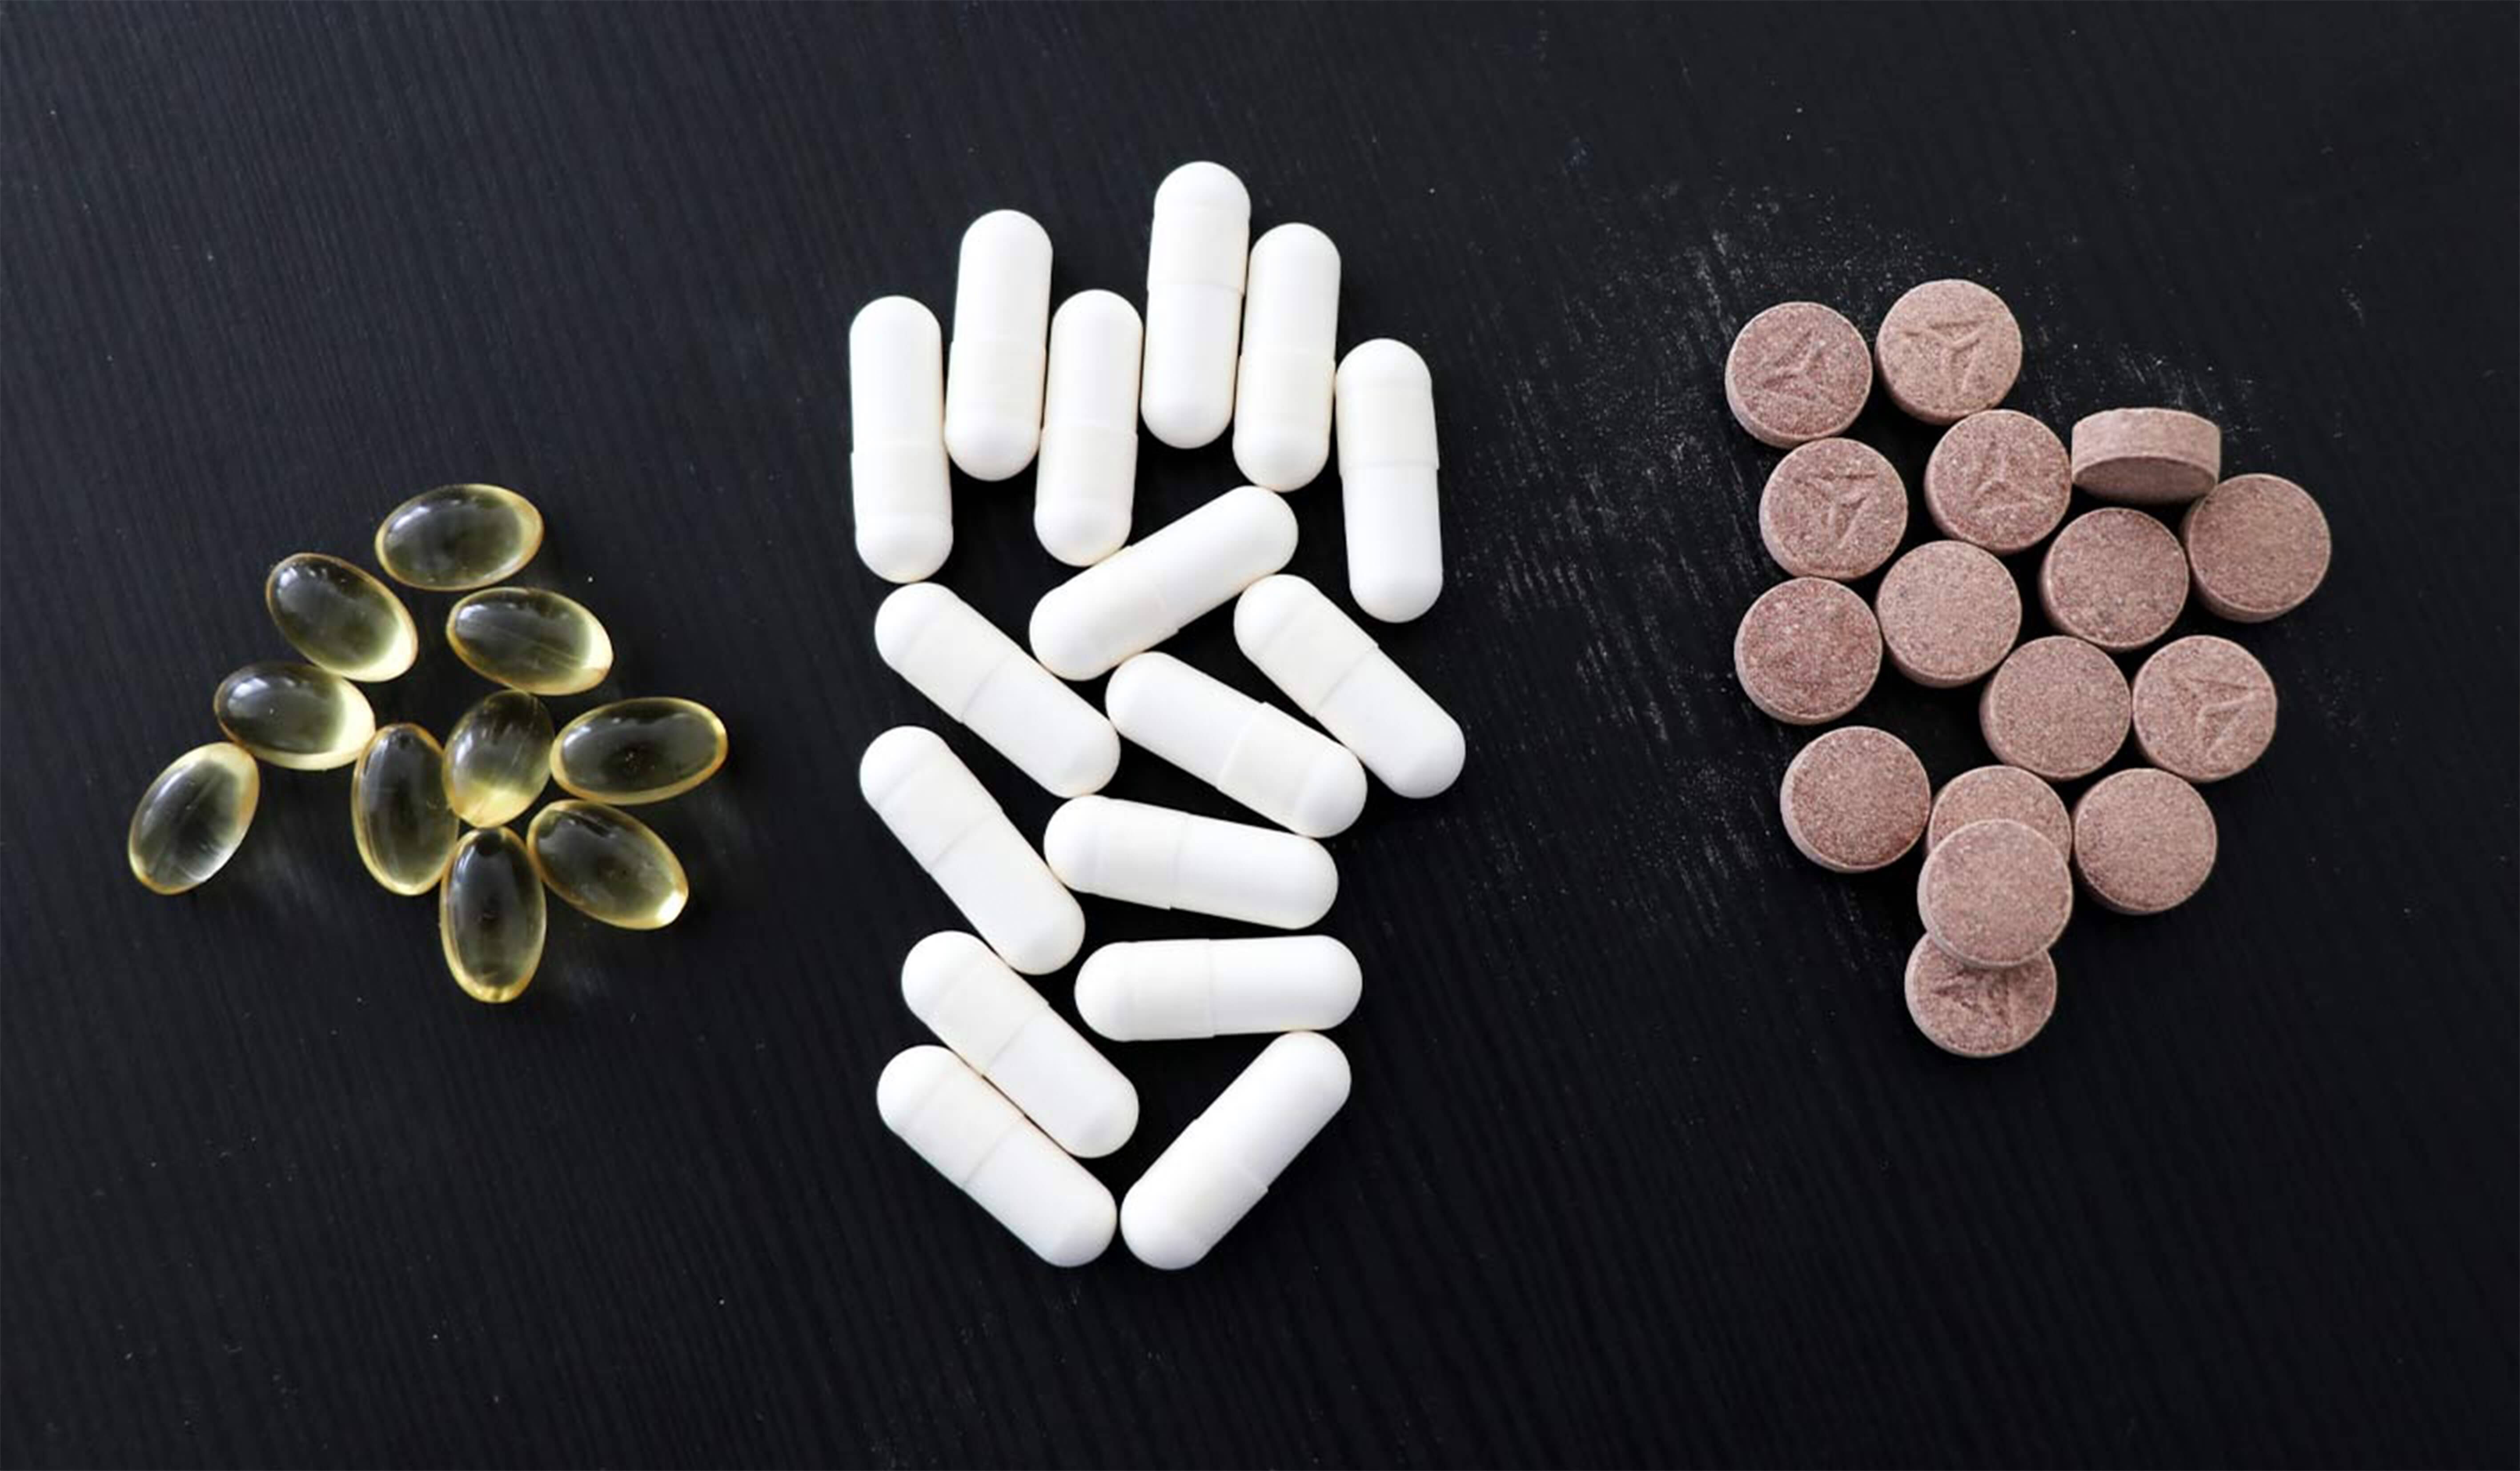 Comprimidos com pequenas иголками entregam medicamentos no organismo não é pior acidentes